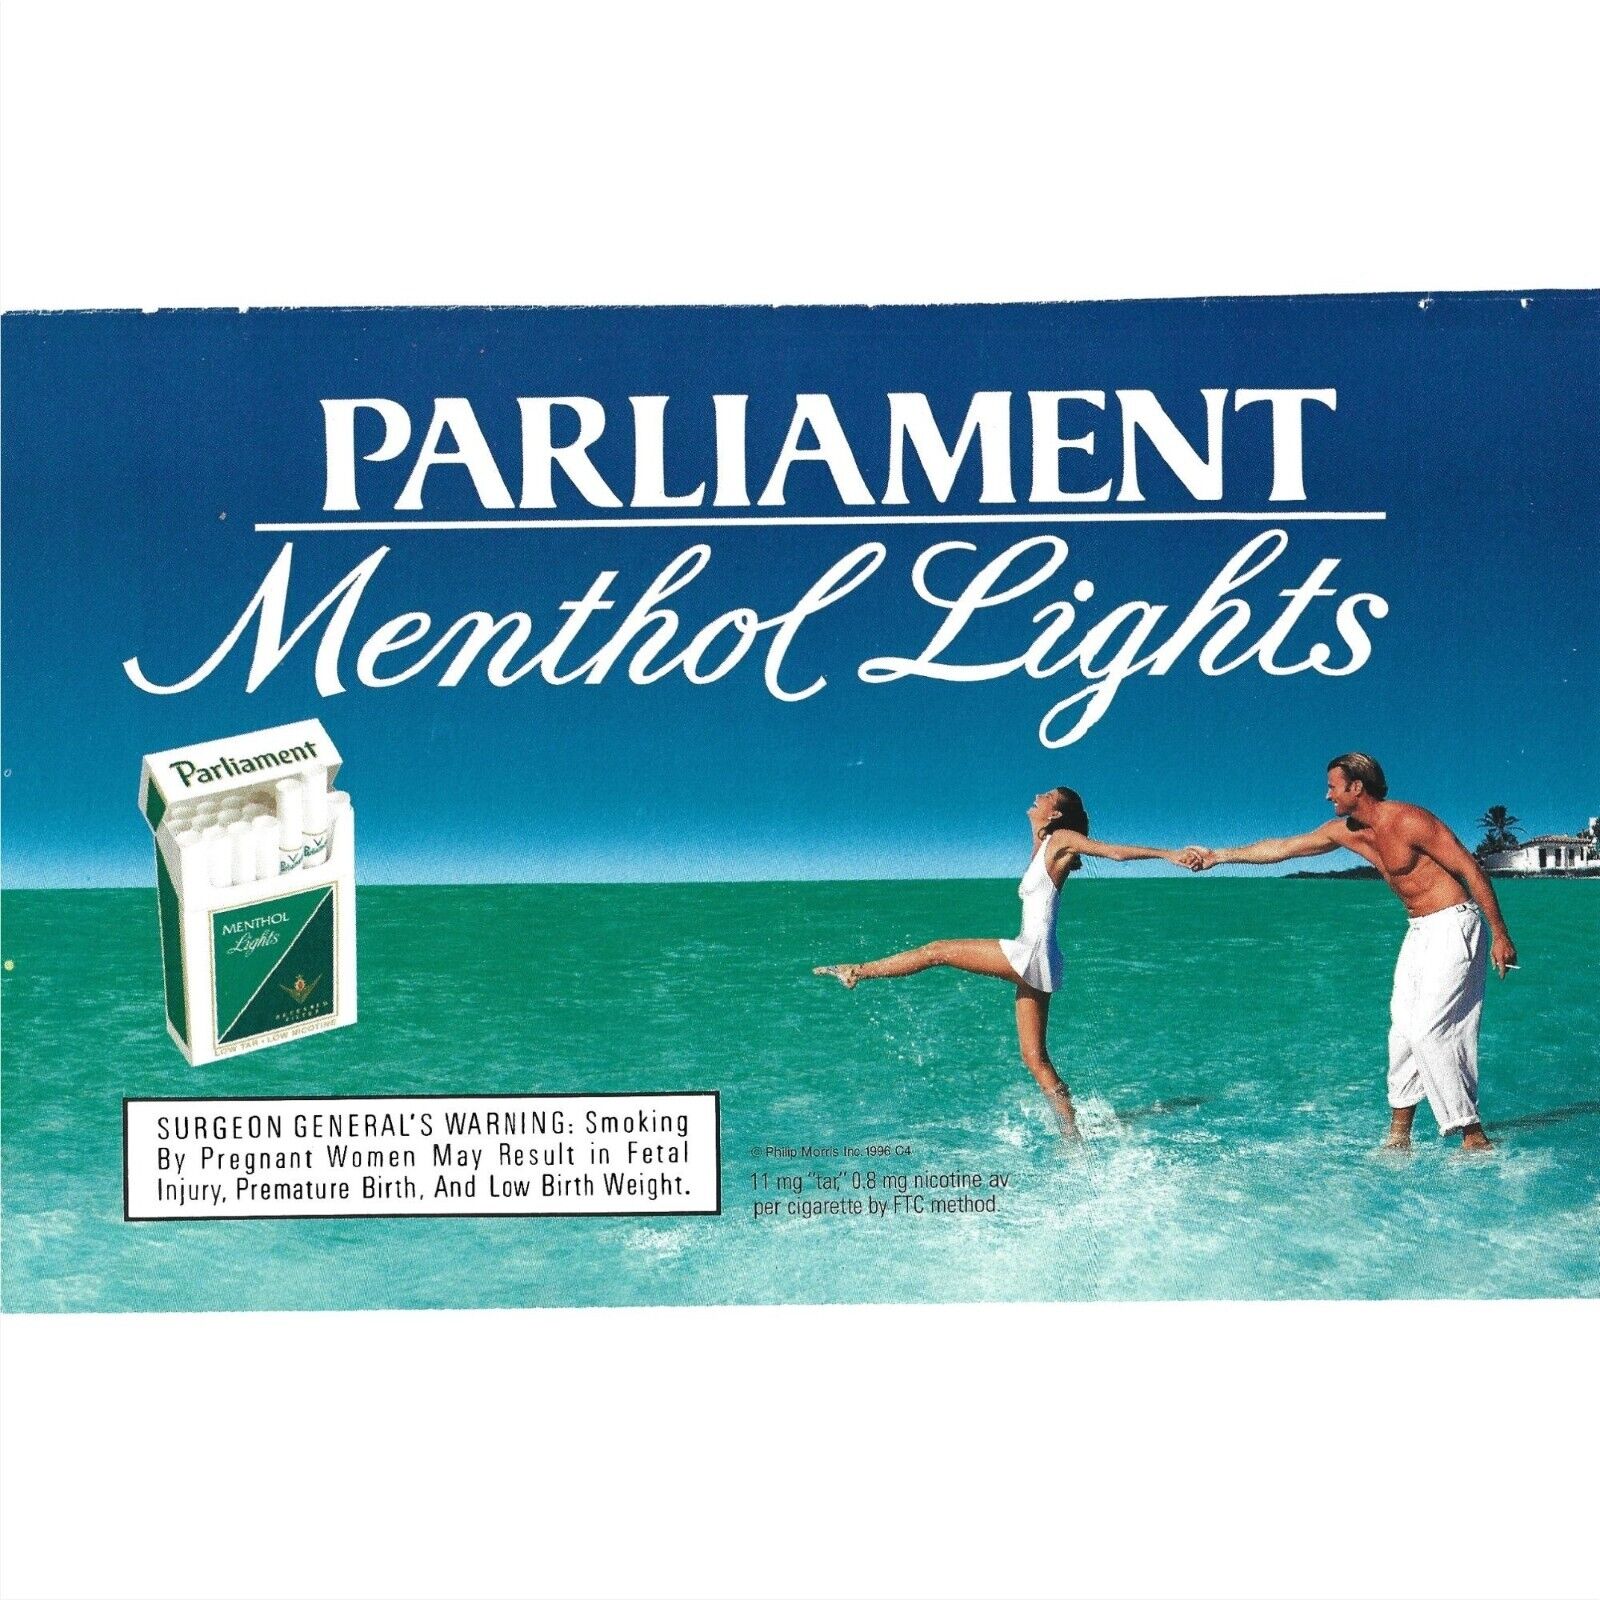 Parliament Menthol Lights Cigarette Ad 1990s  Vintage Print Ad